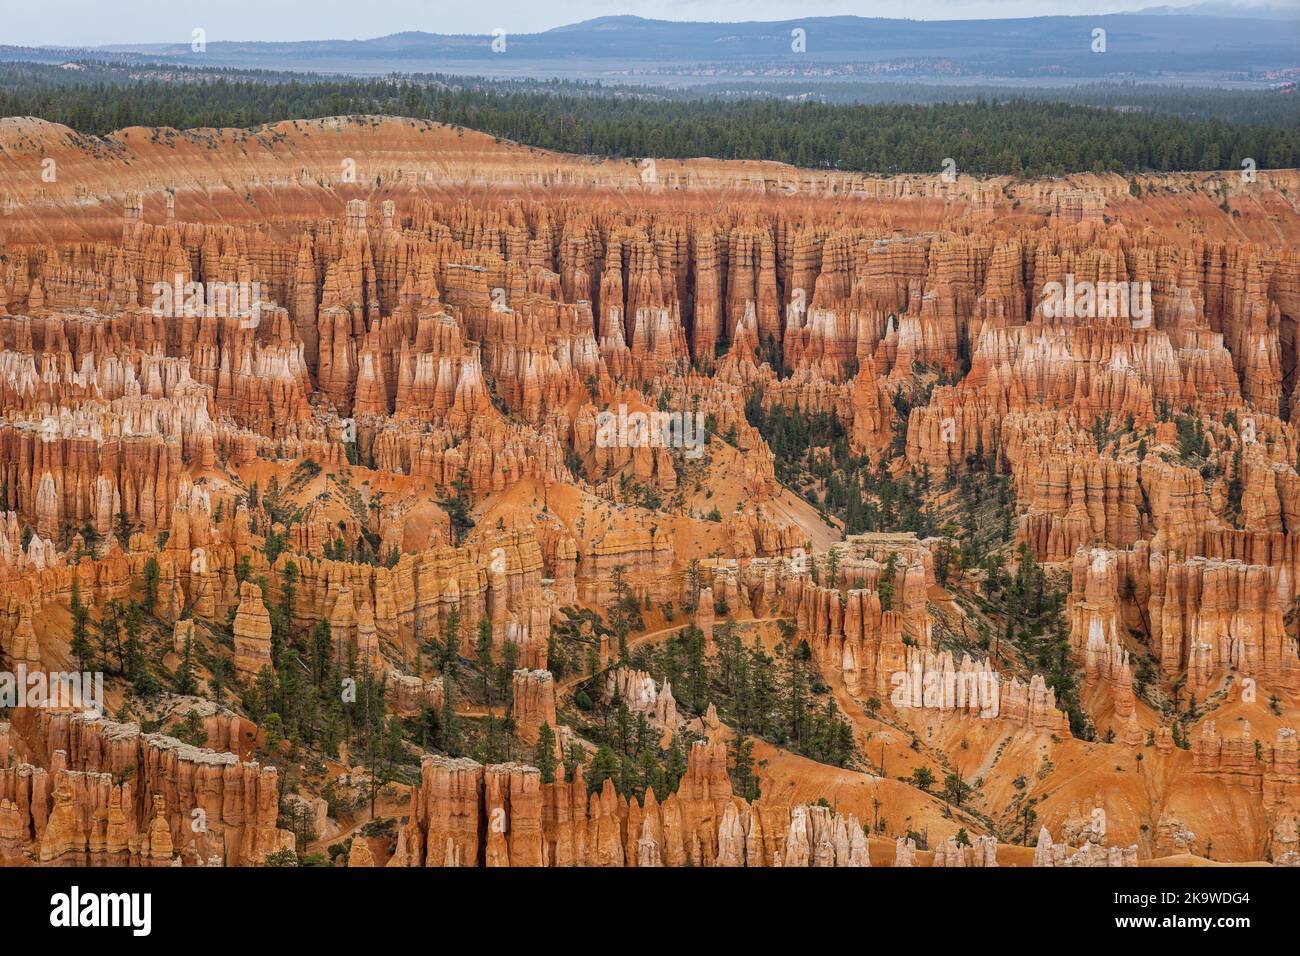 Il Bryce Canyon, nello Utah, è famoso per le sue formazioni rocciose geologiche. A causa del congelamento e dello scongelamento, le formazioni calcaree e arenaria sono lentamente eriche Foto Stock